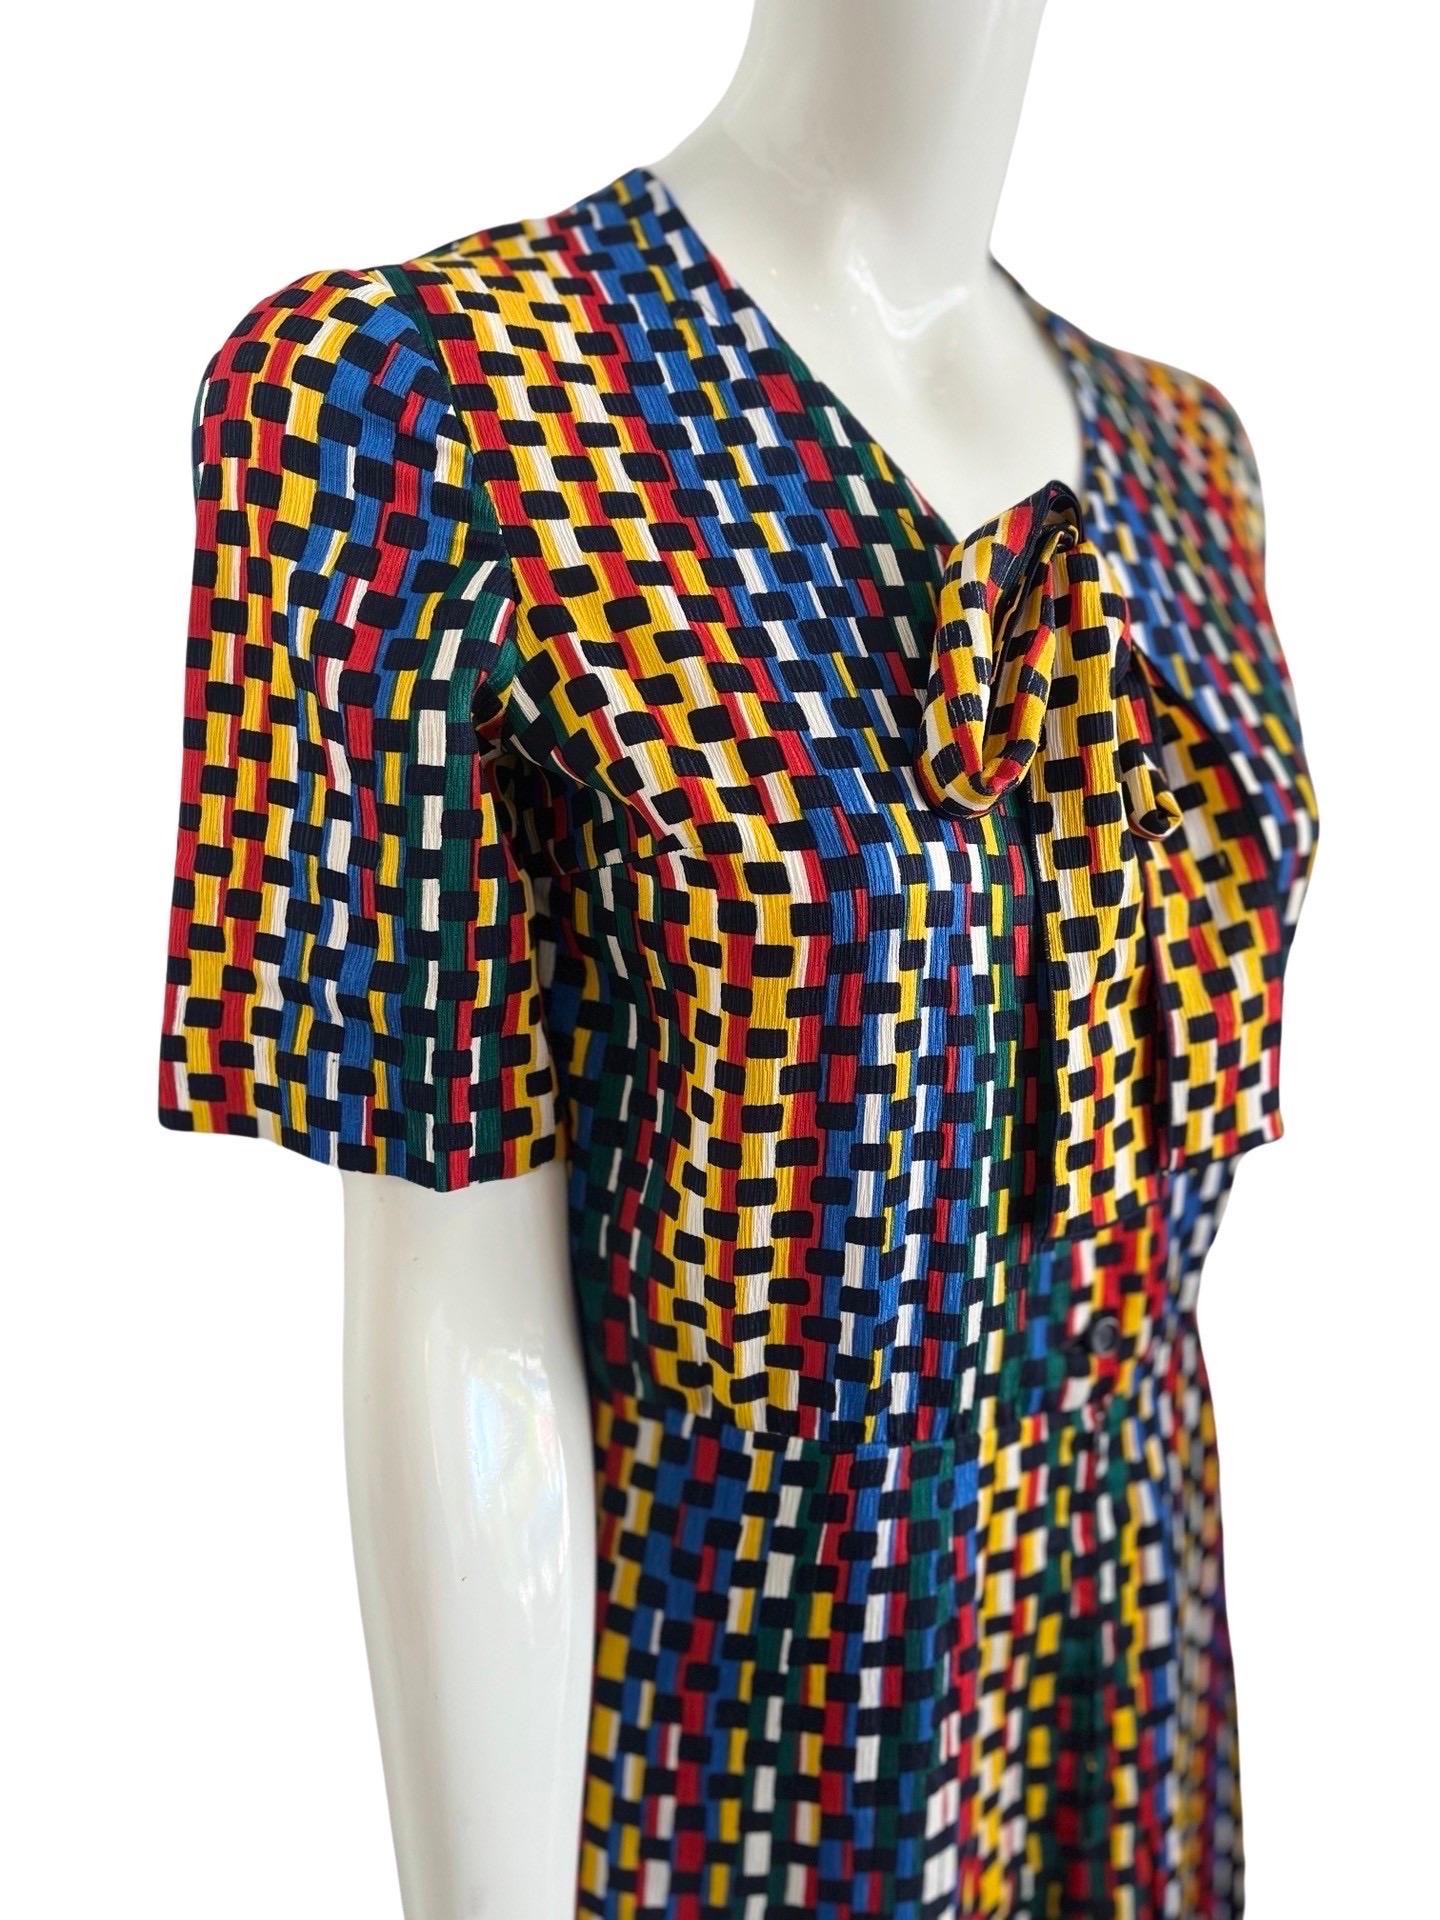 1970er Jahre Lanvin Sekretärin Kleid in einem bunten Mix aus  Primärfarben in einer Art abstraktem Ziegelstein-Schichtdruck.  Der Stoff ist aus Polyester, wie es seinerzeit bei Lanvin beliebt war, fühlt sich aber ähnlich an wie Kreppseide und fällt